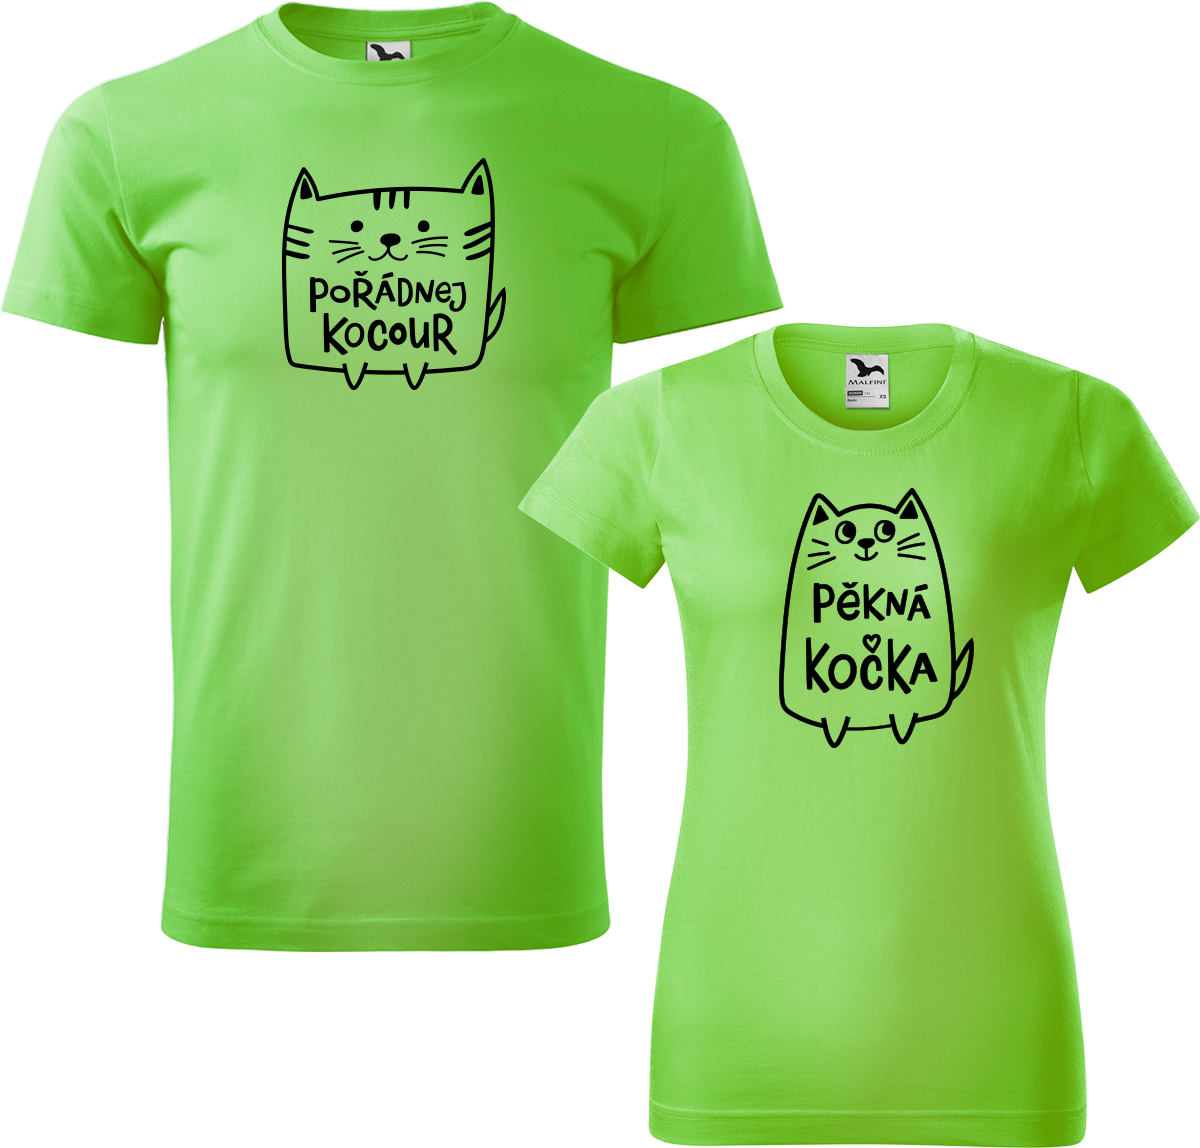 Trička pro páry - Pořádnej kocour a pěkná kočka Barva: Apple Green (92), Velikost dámské tričko: S, Velikost pánské tričko: L